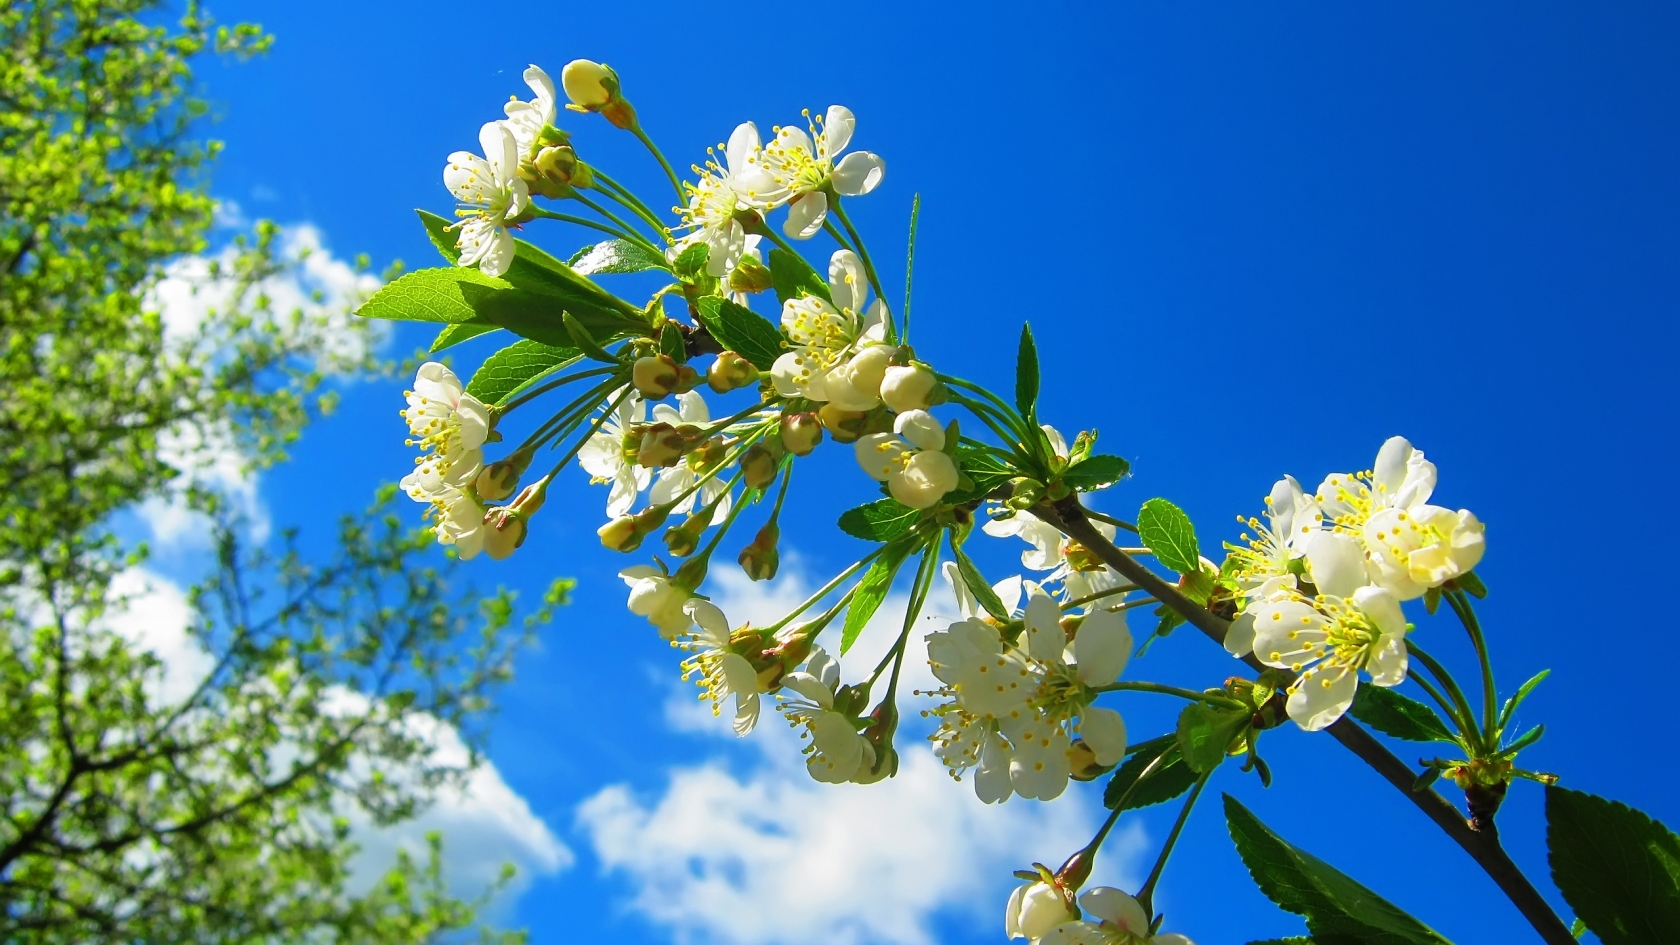 Spring Flower Tree for 1680 x 945 HDTV resolution